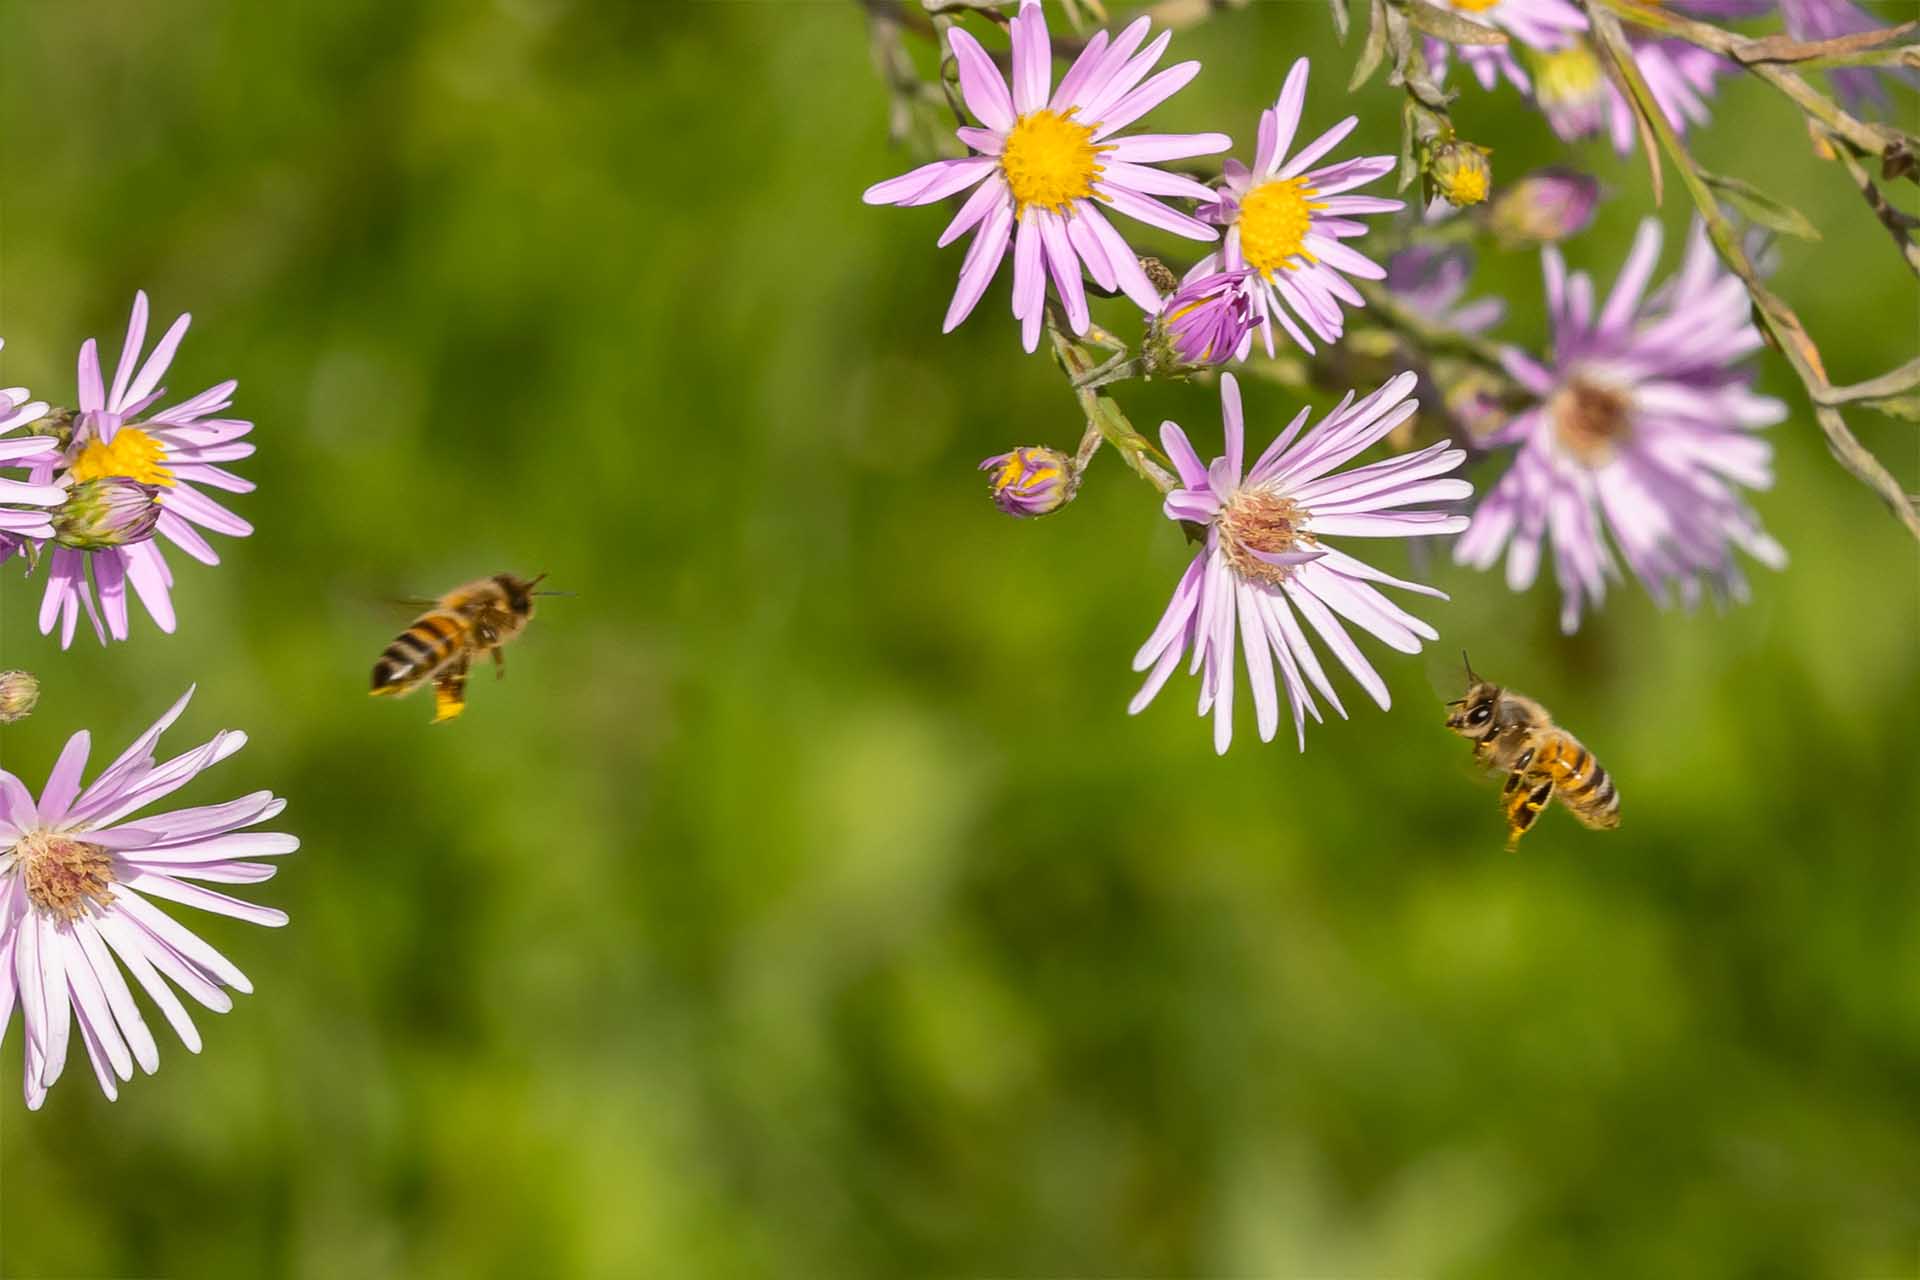 Essbarer Naschgarten Sonnenberg beim Areal Ifang des Verein für Familiengärten Dübendorf: Im Oktober 2023 strahlt die blühende Aster in der Abendsonne. Die essbare Hecke ist nicht nur für Menschen: Die Aster lockt zahlreiche Insekten, Bienen und Schmetterlinge, an und versorgt diese mit Nektar. Auf dem Foto sieht man in einer Nahaufnahme zwei fliegende Honigbienen an einer Aster.